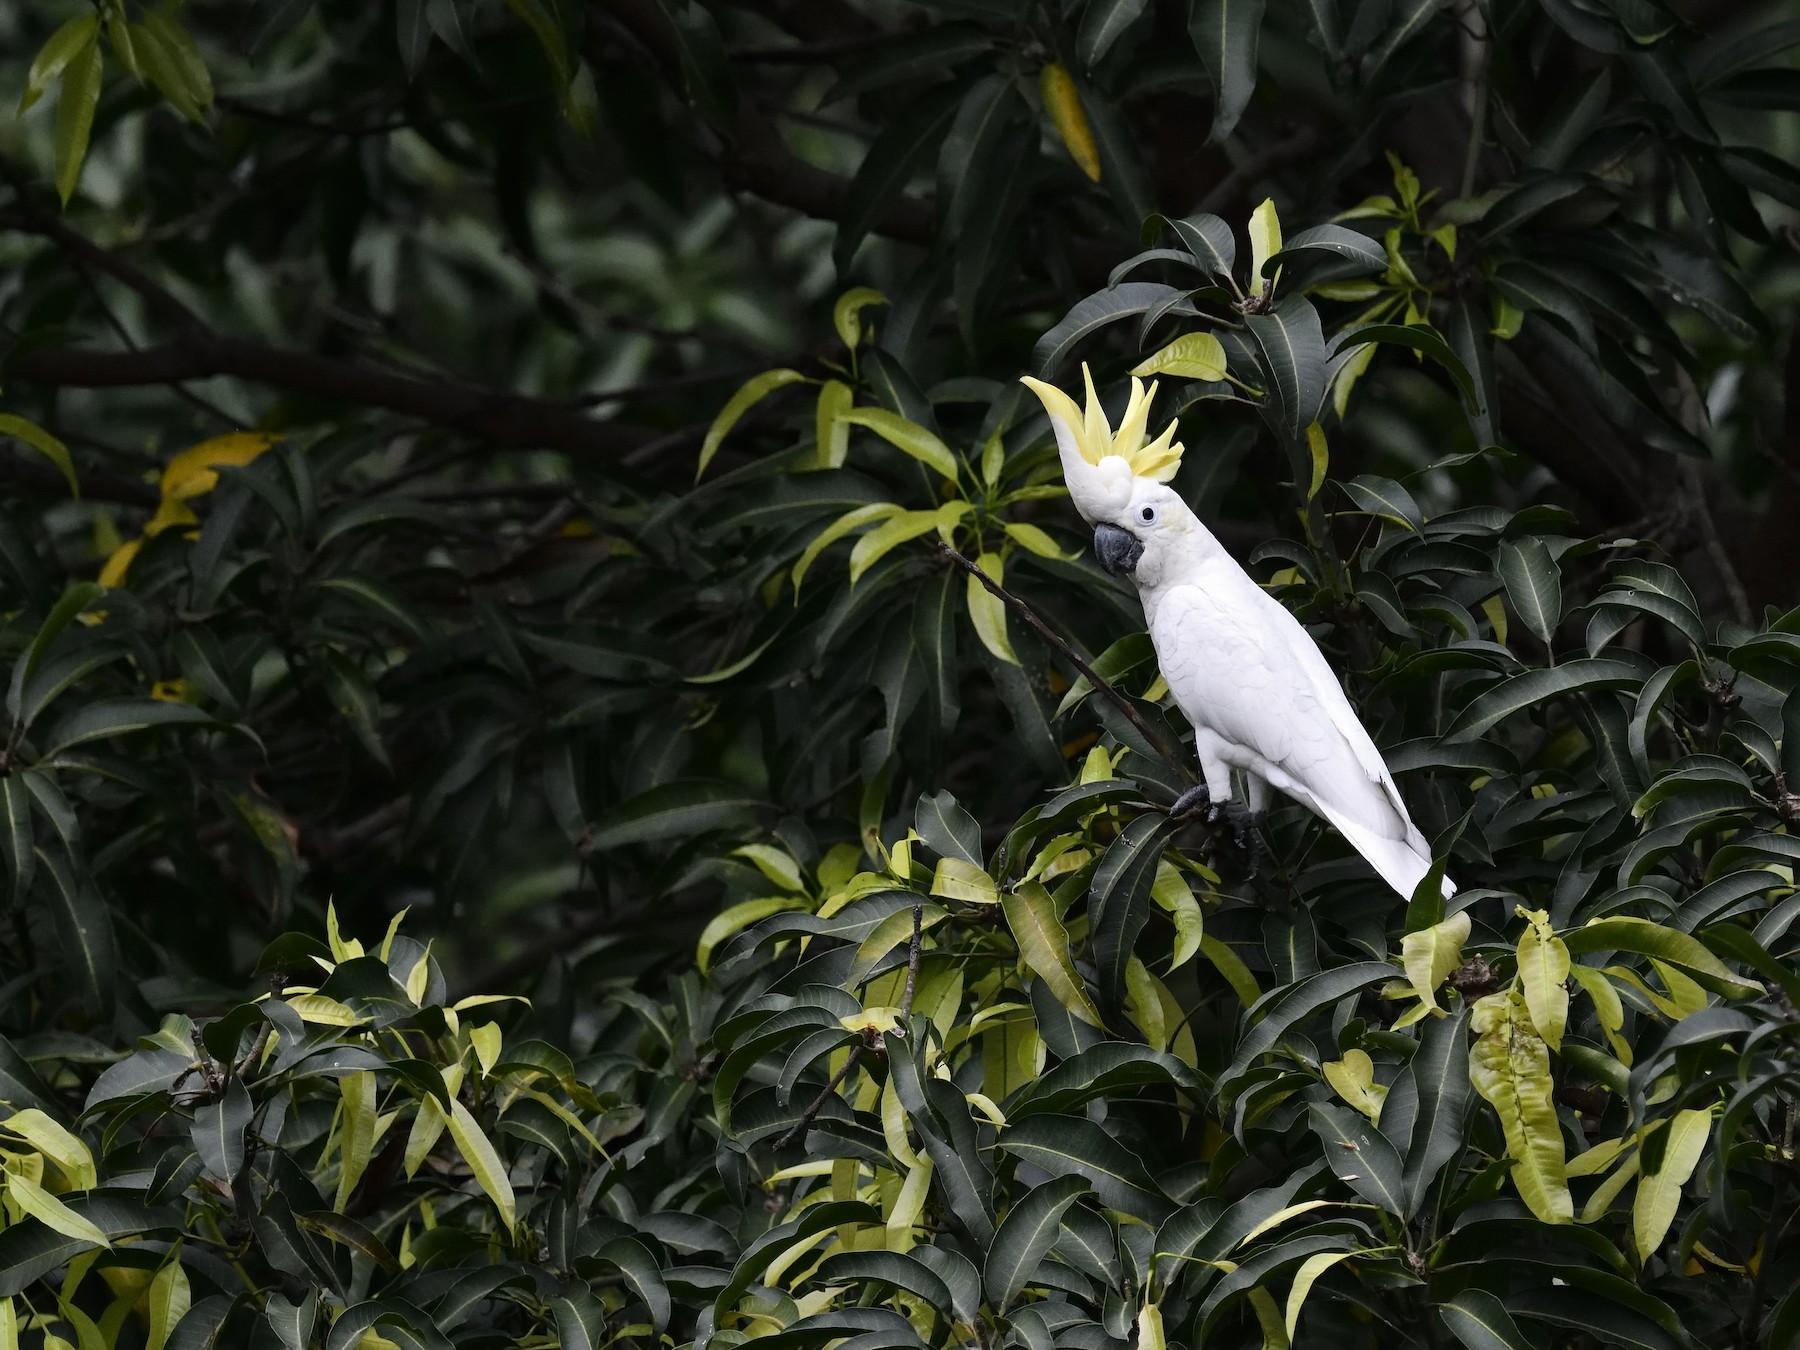 Yellow-crested Cockatoo - Chun Fai LO